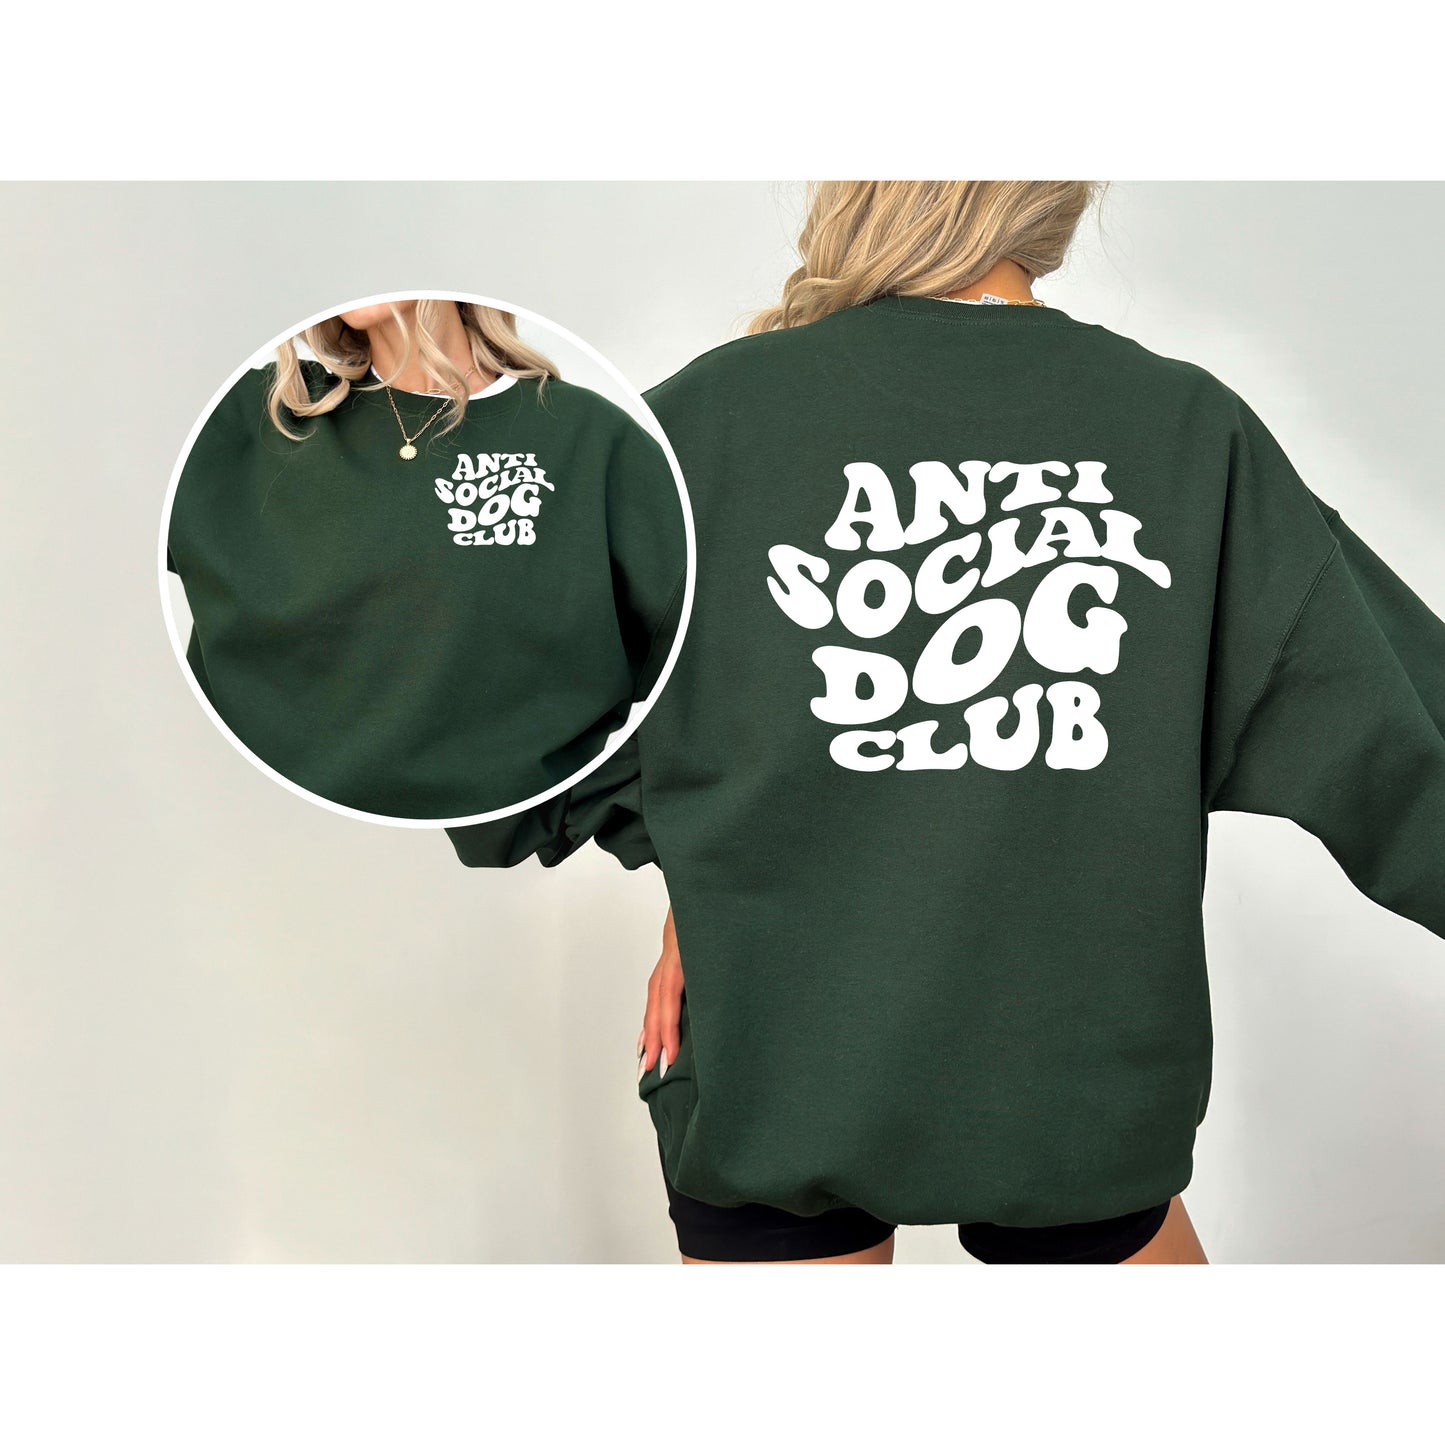 Antisocial Dog Club Sweatshirt